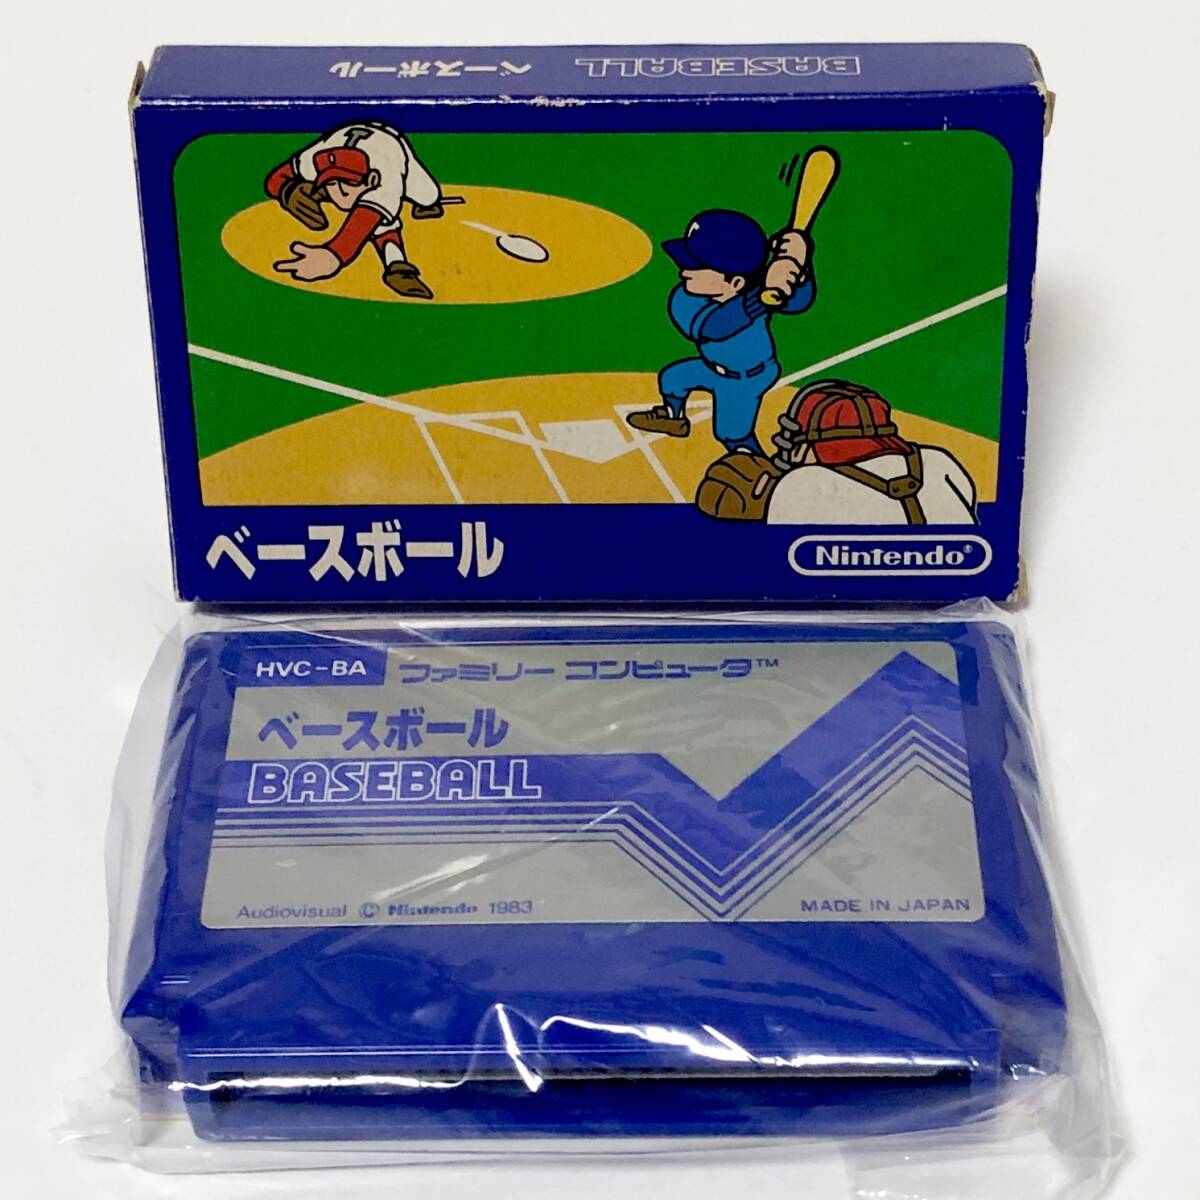 ファミコン ベースボール 小箱版 箱説付き 痛みあり 操作法早見図付き Nintendo Famicom Baseball Small Box Version CIB Testedの画像1